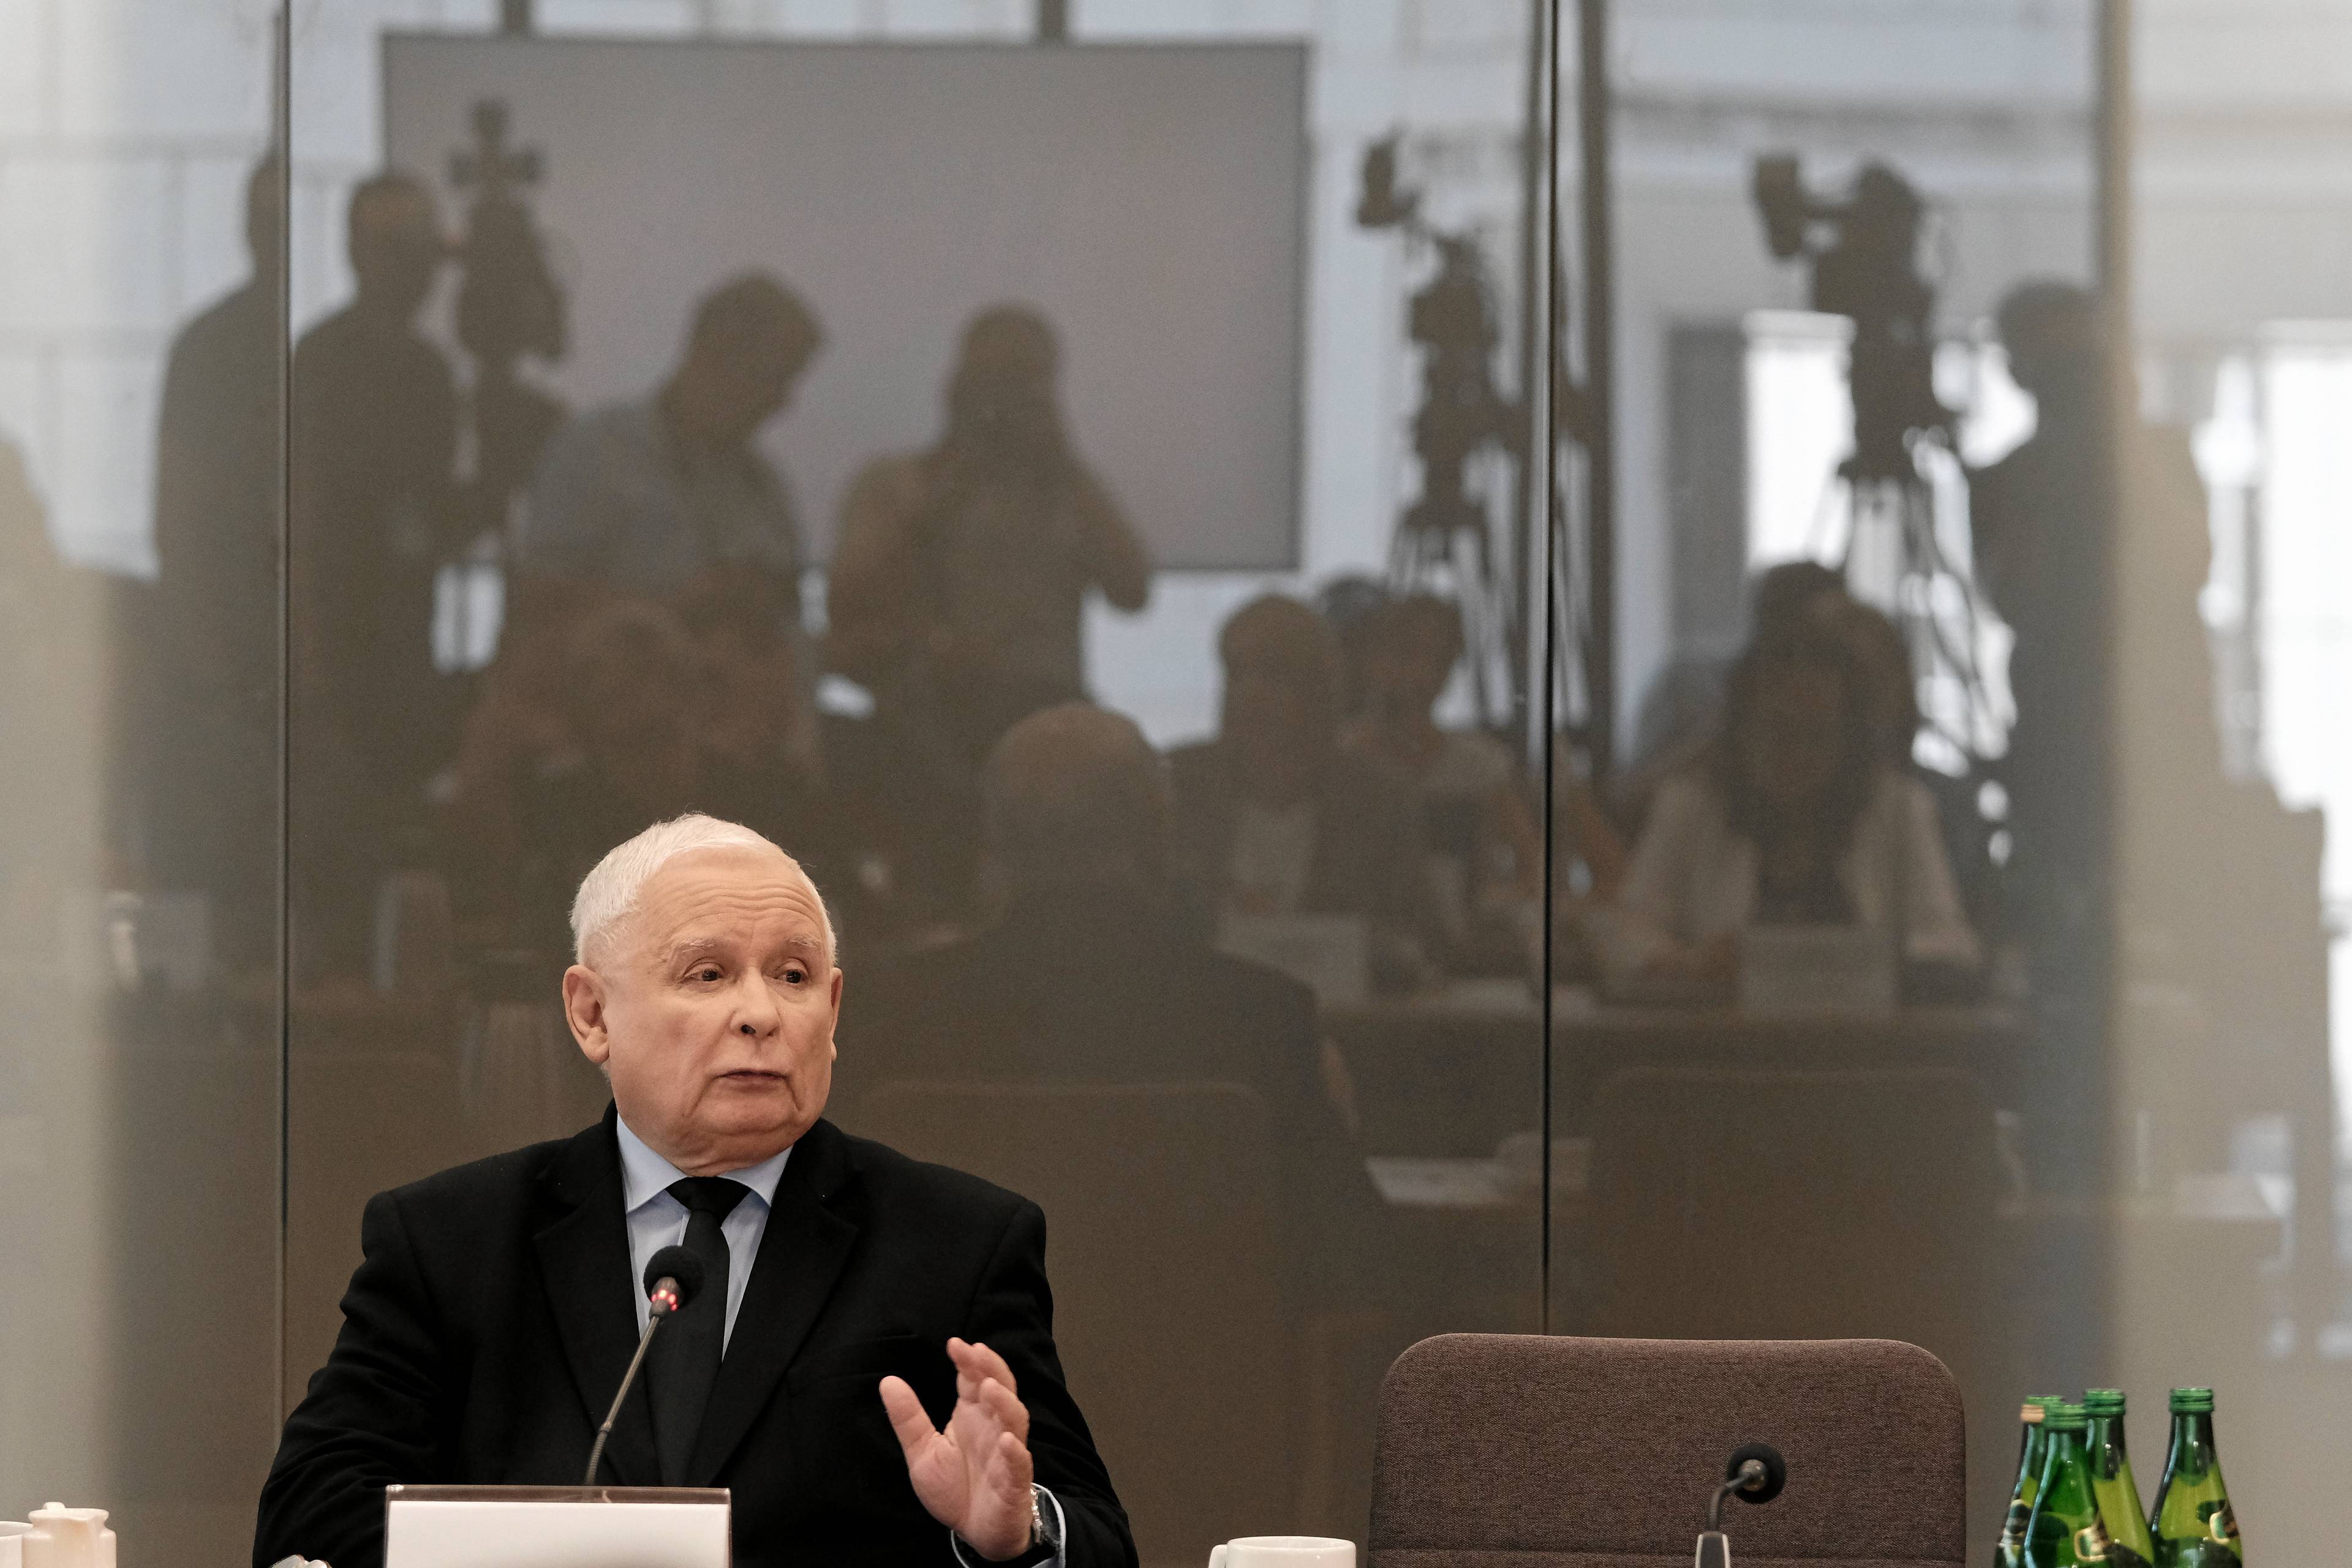 Jarosław Kaczyński podczas przesłuchania przed komisją śledczą